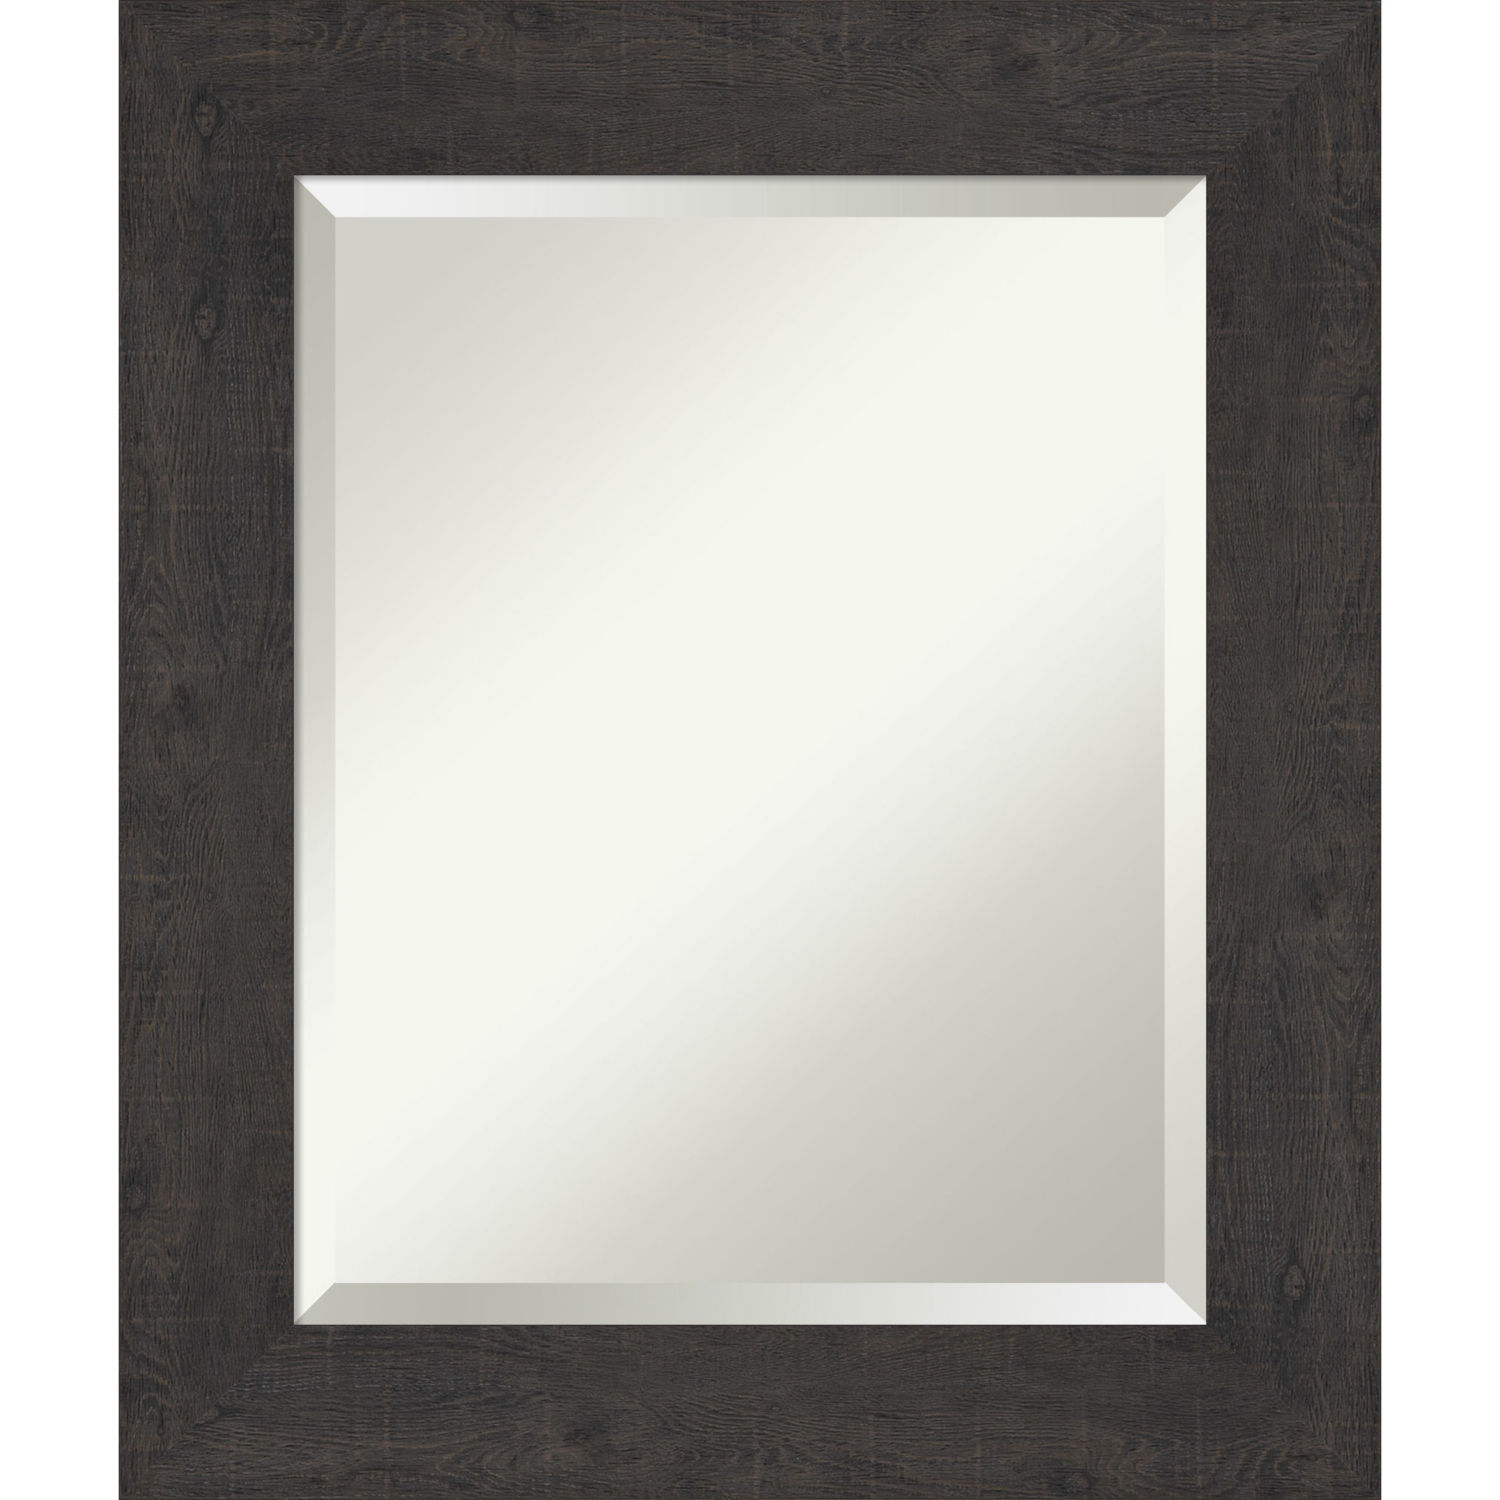 Espresso Frame 21W X 25H-Inch Bathroom Vanity Wall Mirror